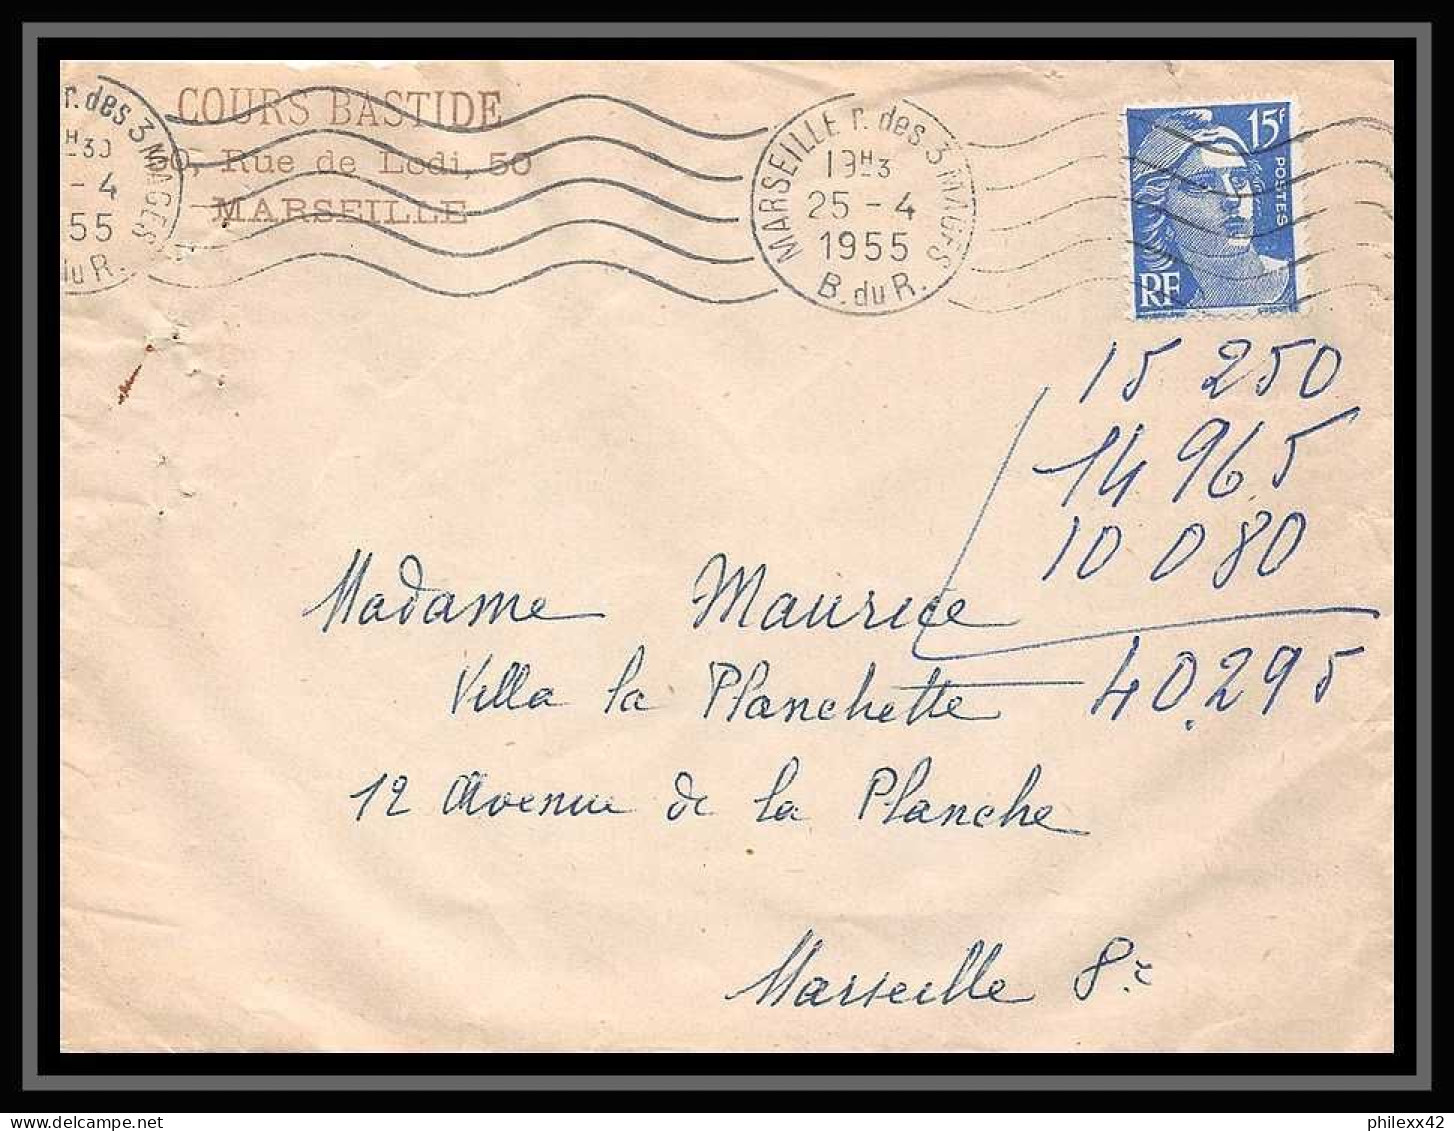 107957 lot de 10 lettres et Carte postale (postcard) dont recommandé Bouches du rhone N° Marseille rue des trois mages